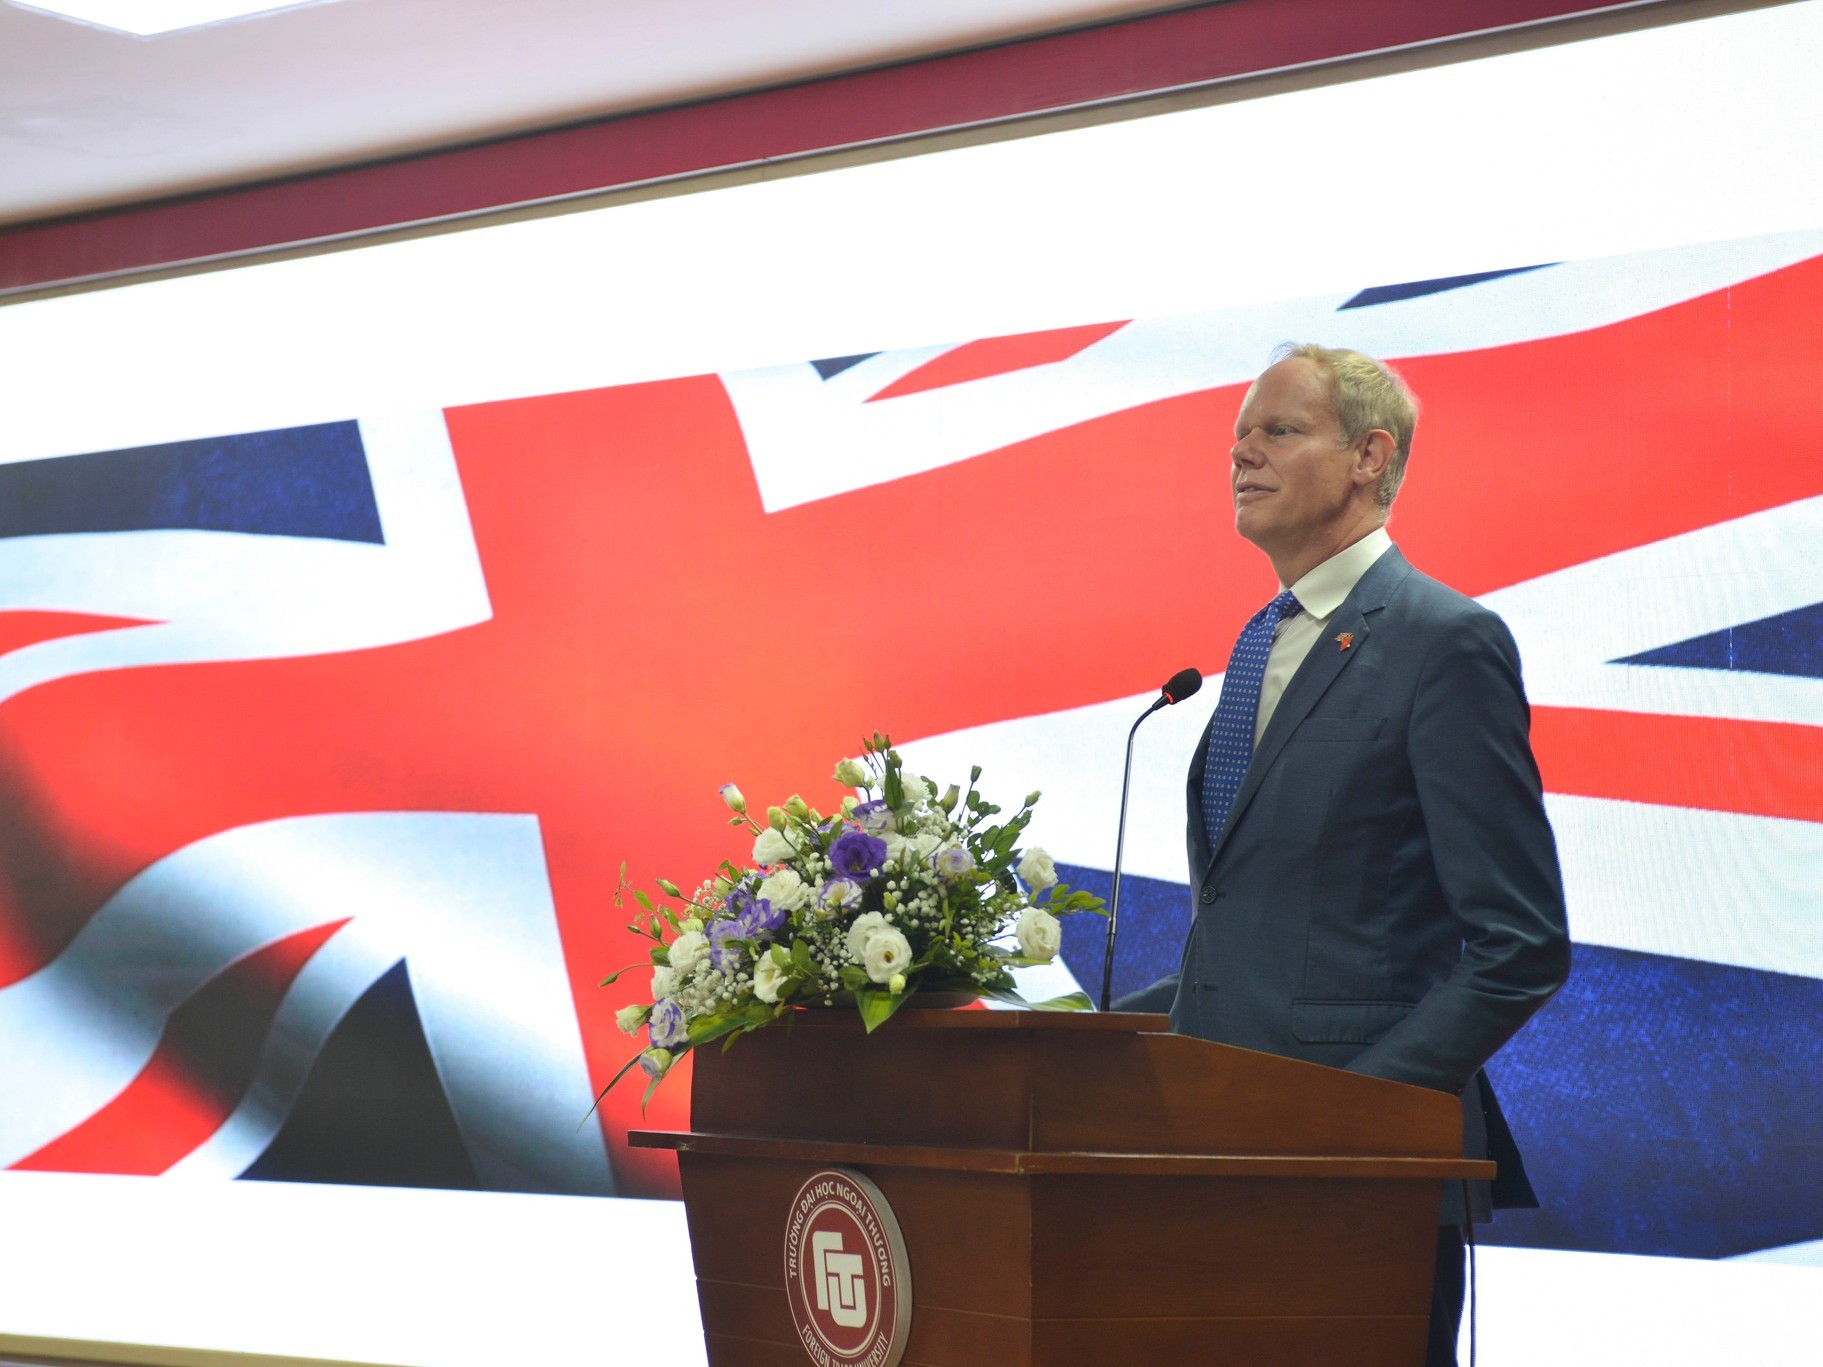 Quốc Vụ Khanh Bộ Nội Vụ của Vương quốc Anh muốn trao đổi trực tiếp với sinh viên FTU chuyển tiếp sang Anh Quốc